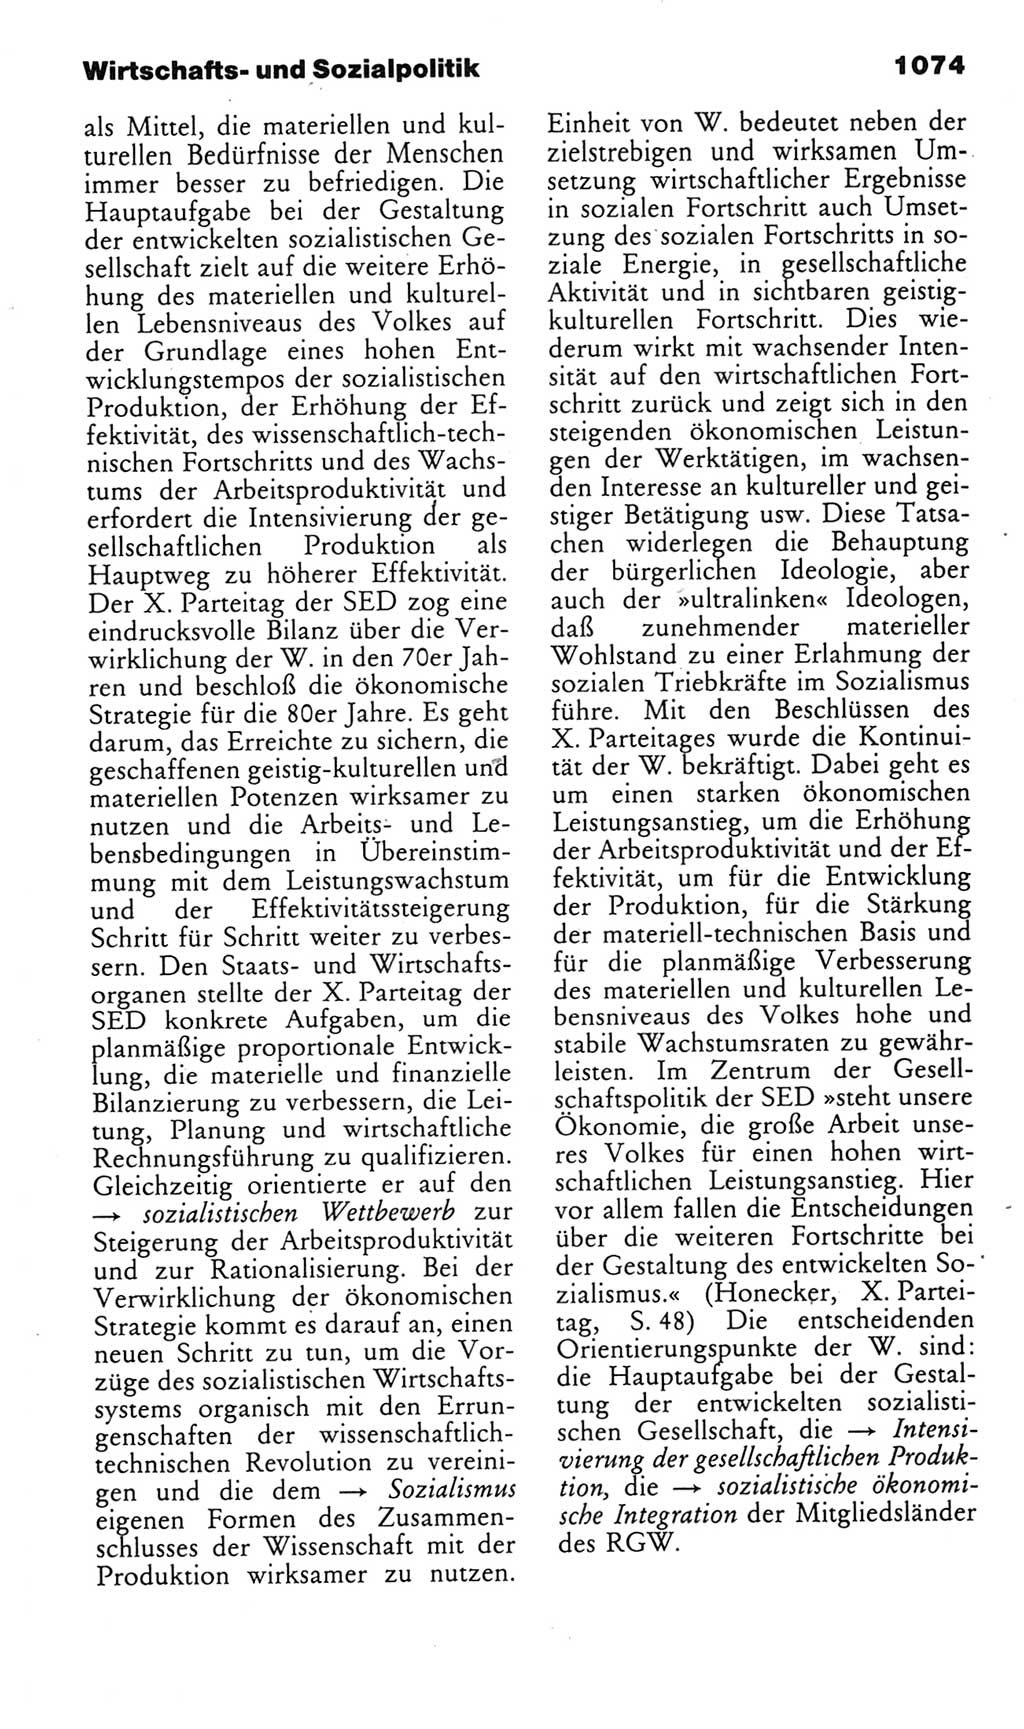 Kleines politisches Wörterbuch [Deutsche Demokratische Republik (DDR)] 1985, Seite 1074 (Kl. pol. Wb. DDR 1985, S. 1074)